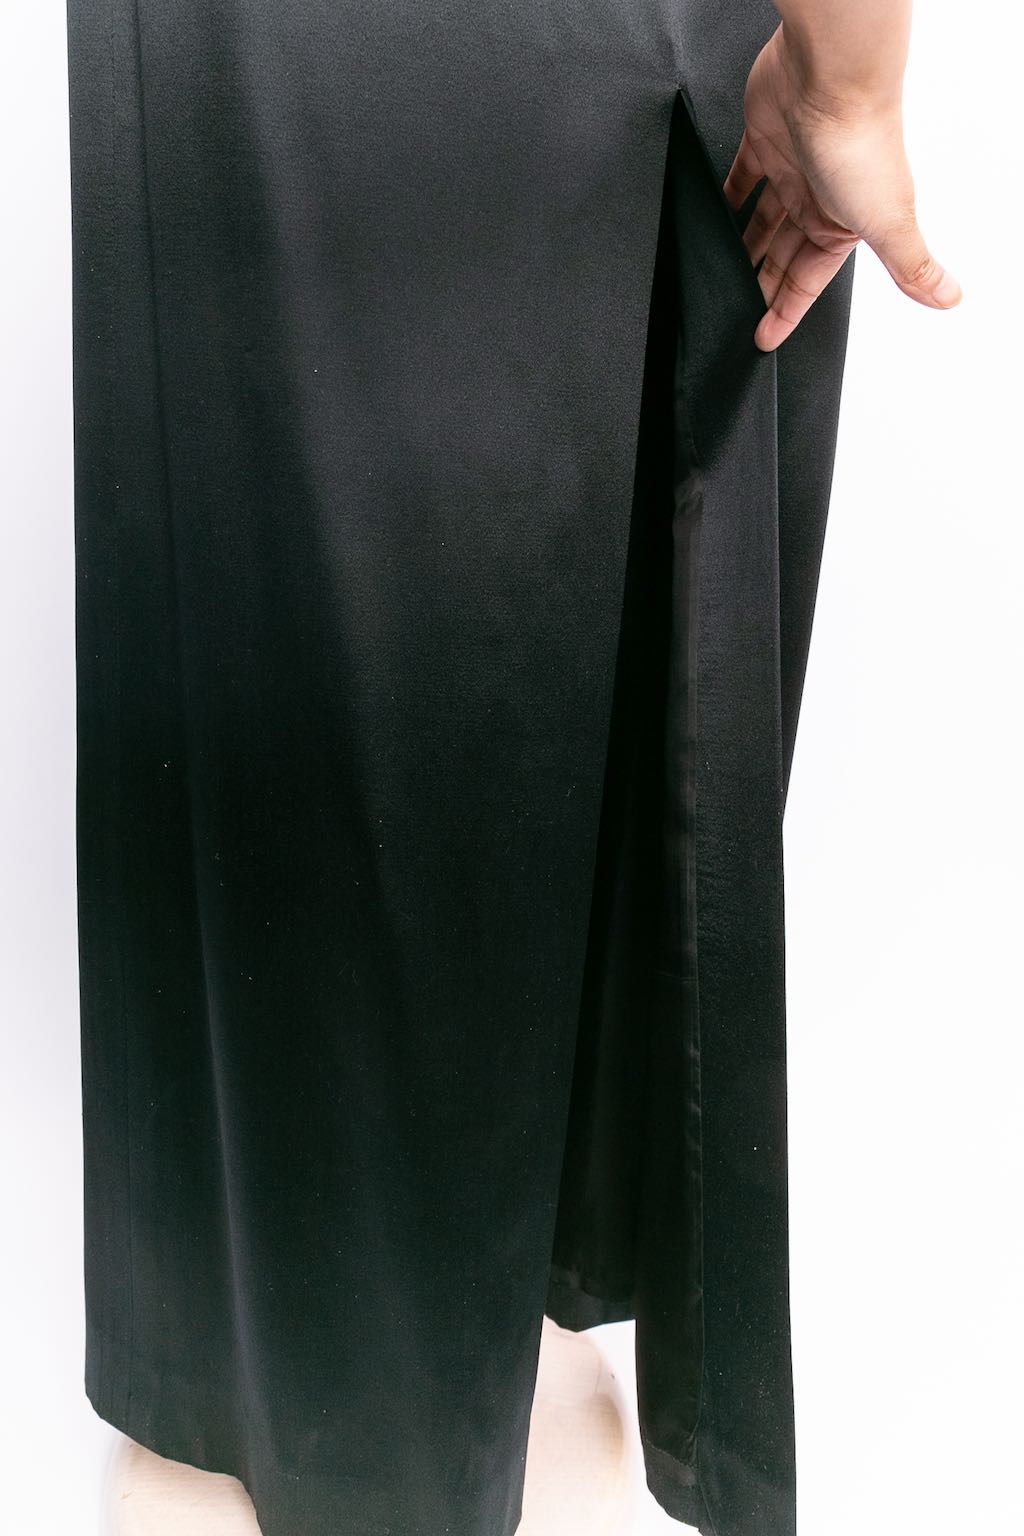 Yves Saint Laurent long silk skirt